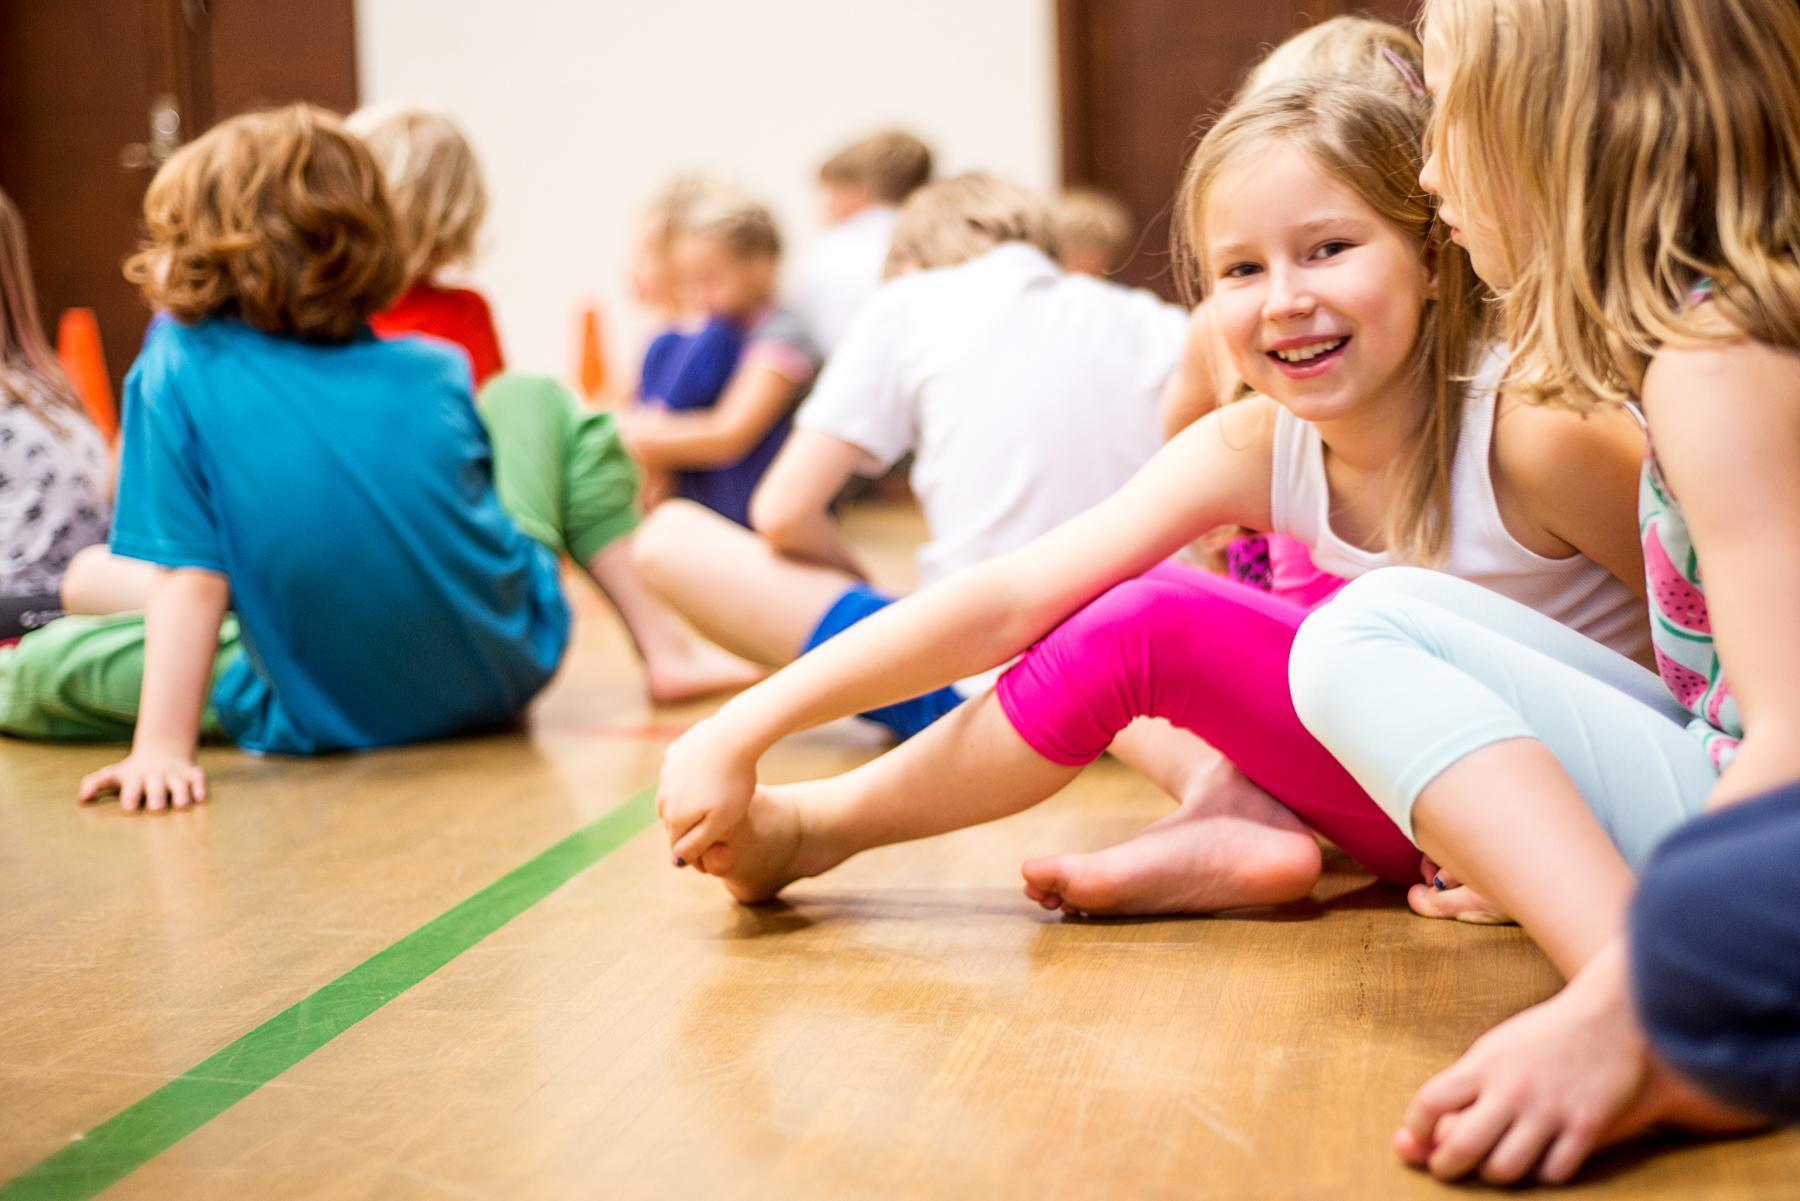 Lapset istuvat liikuntasalin lattialla ja tyttö katsoo hymyillen kameraan.